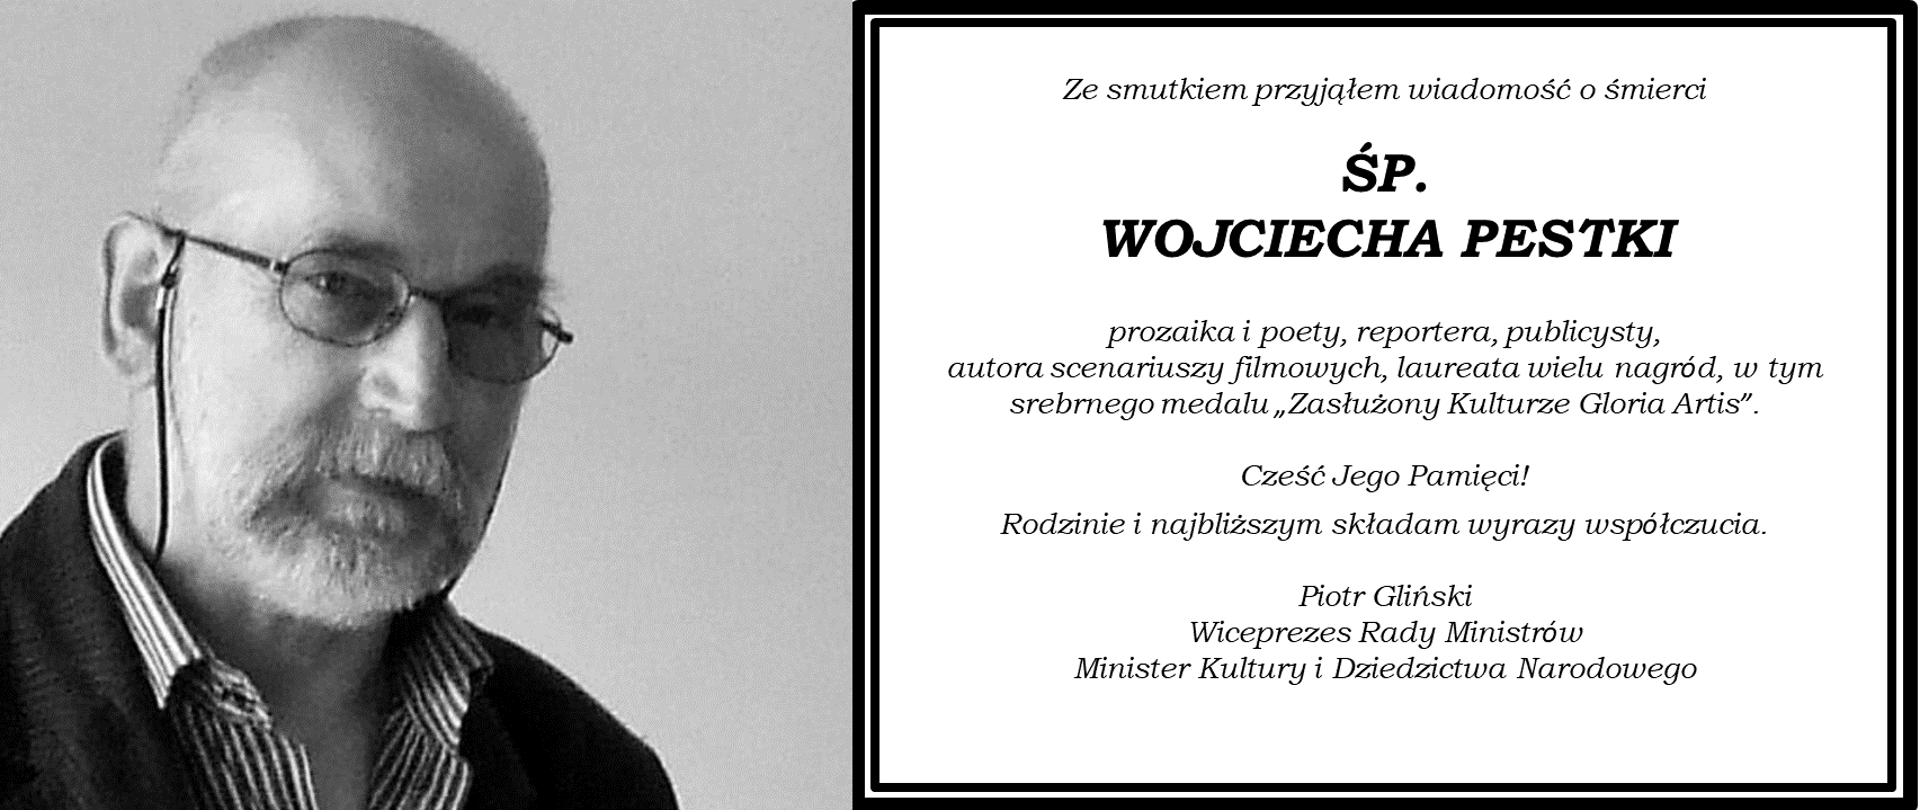 Żegnamy Wojciecha Pestkę – poetę, prozaika, scenarzystę filmu „Klecha”, fot. Wikipedia